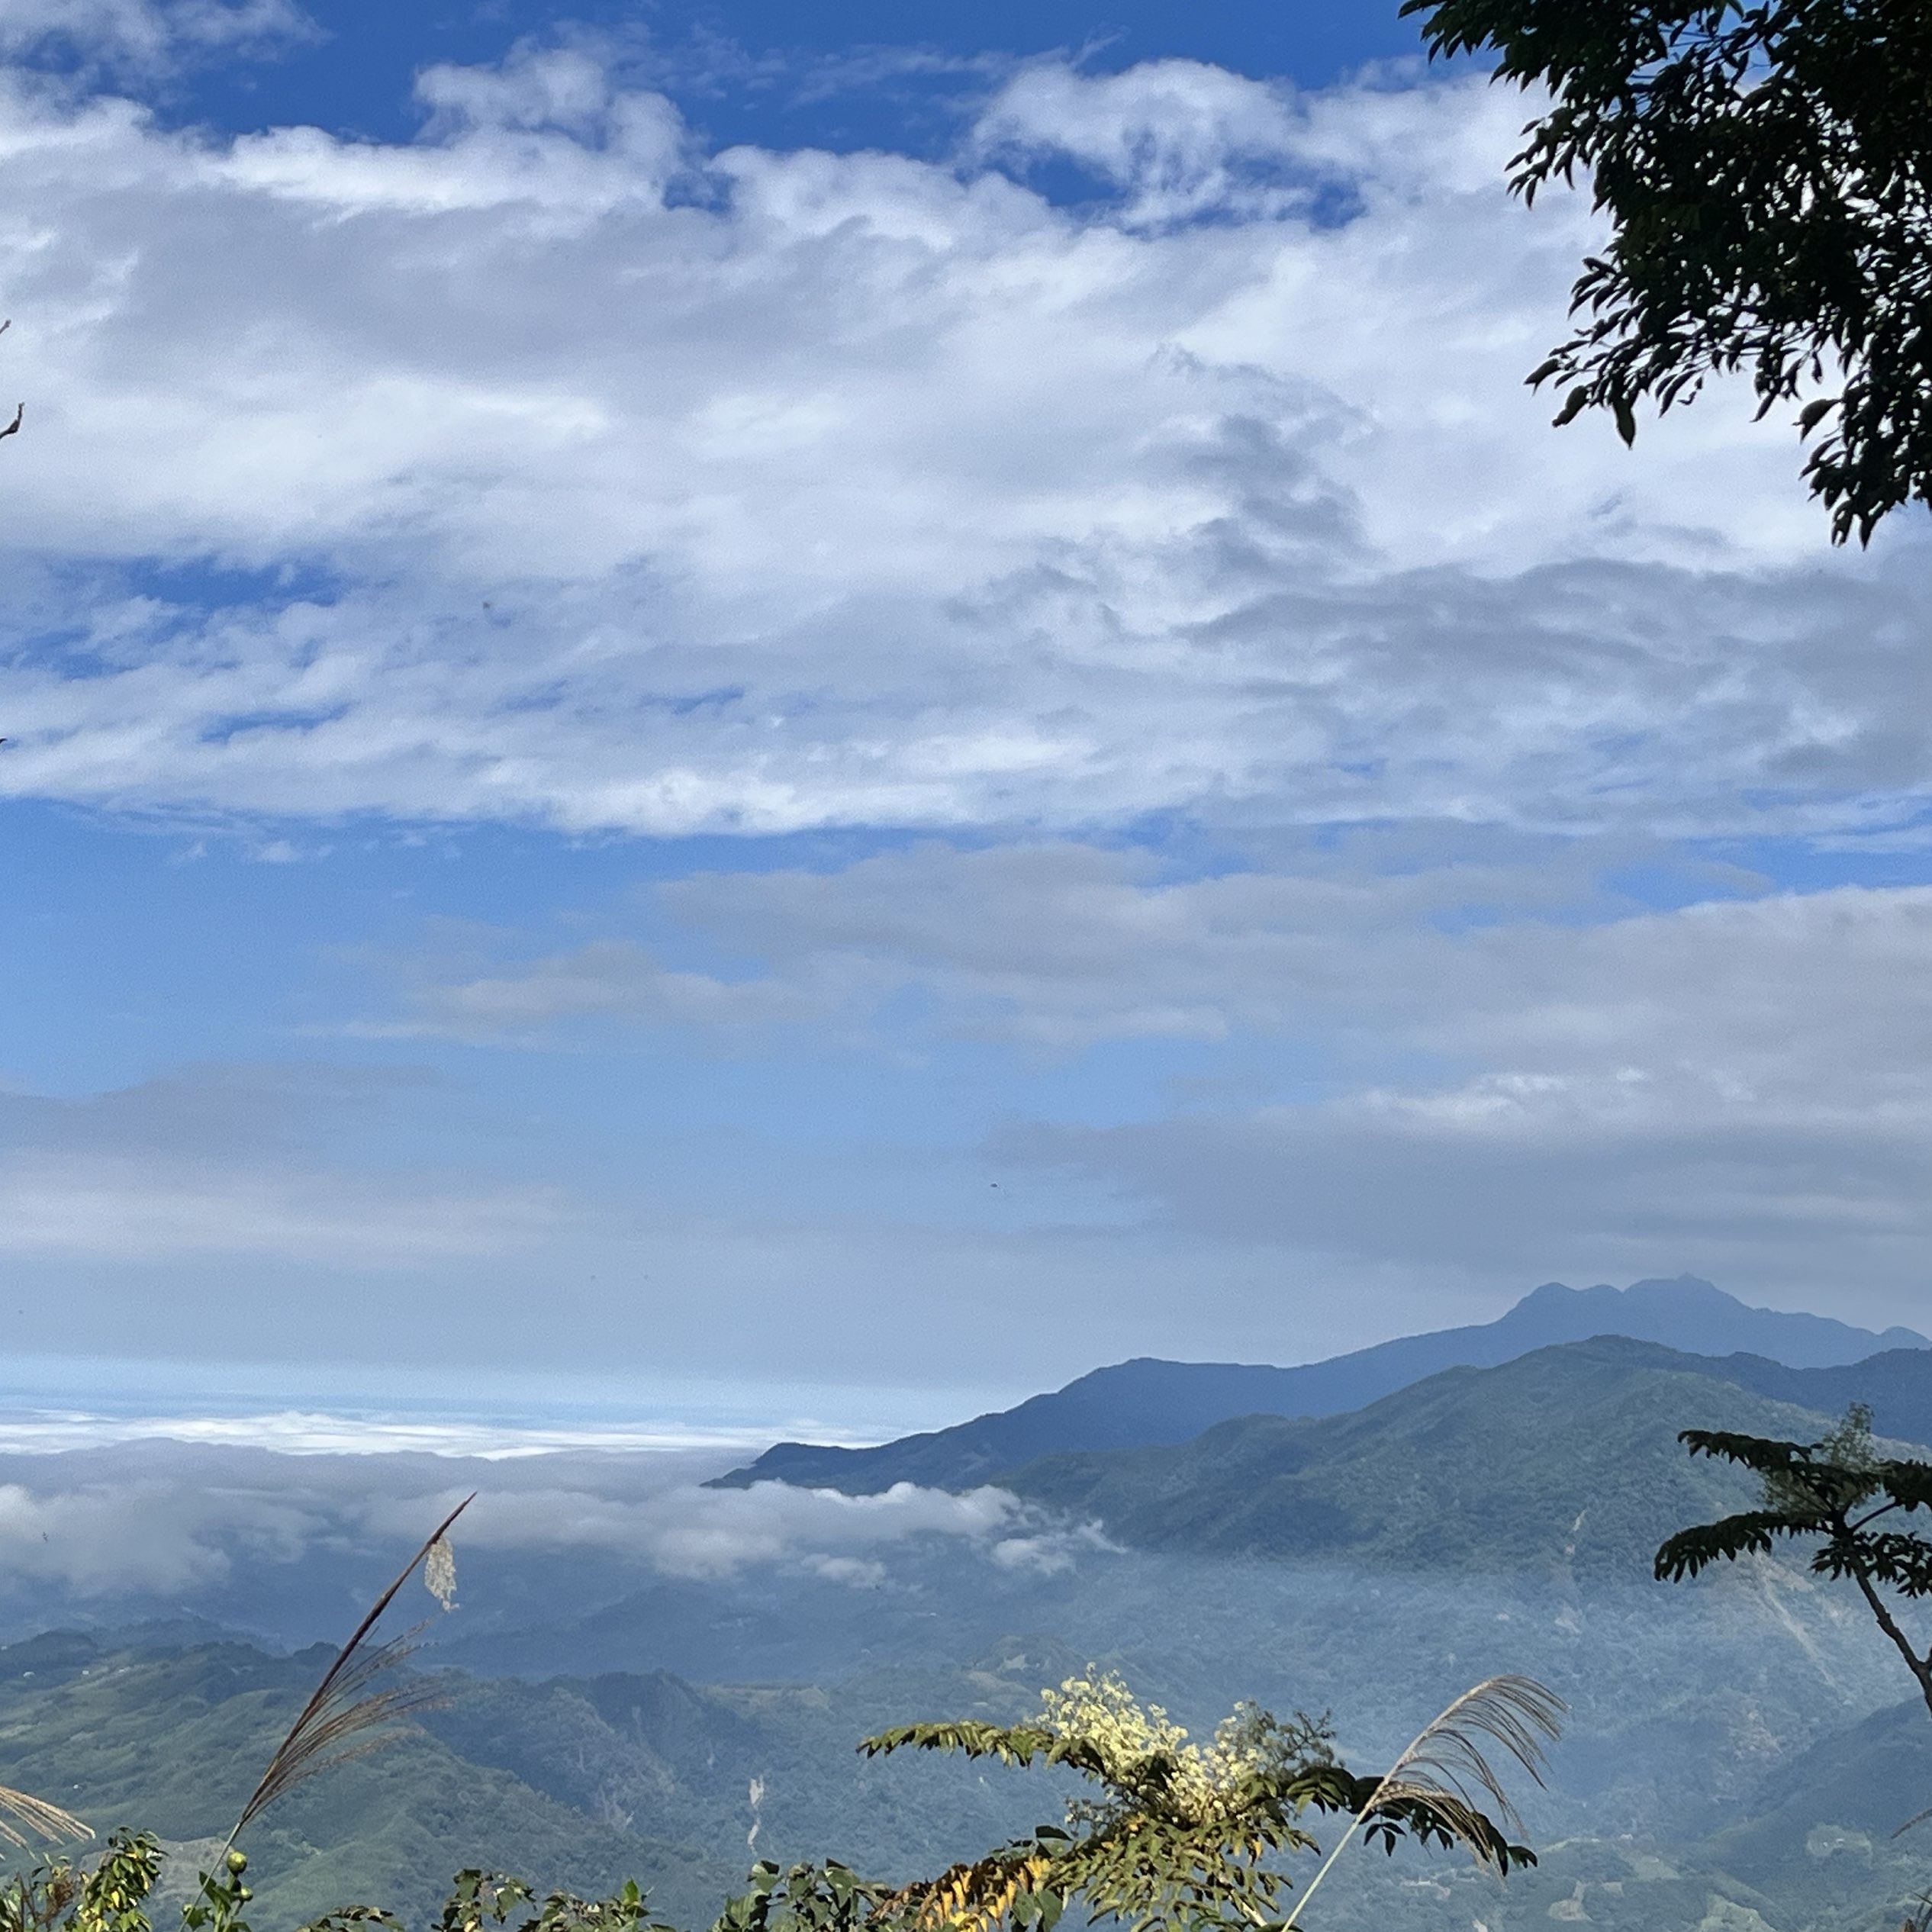 周末帮自己安排了一趟「马拉邦山小百岳赏枫一日游」  位于苗栗泰安乡的马拉邦山，是台湾的小百岳之一，也